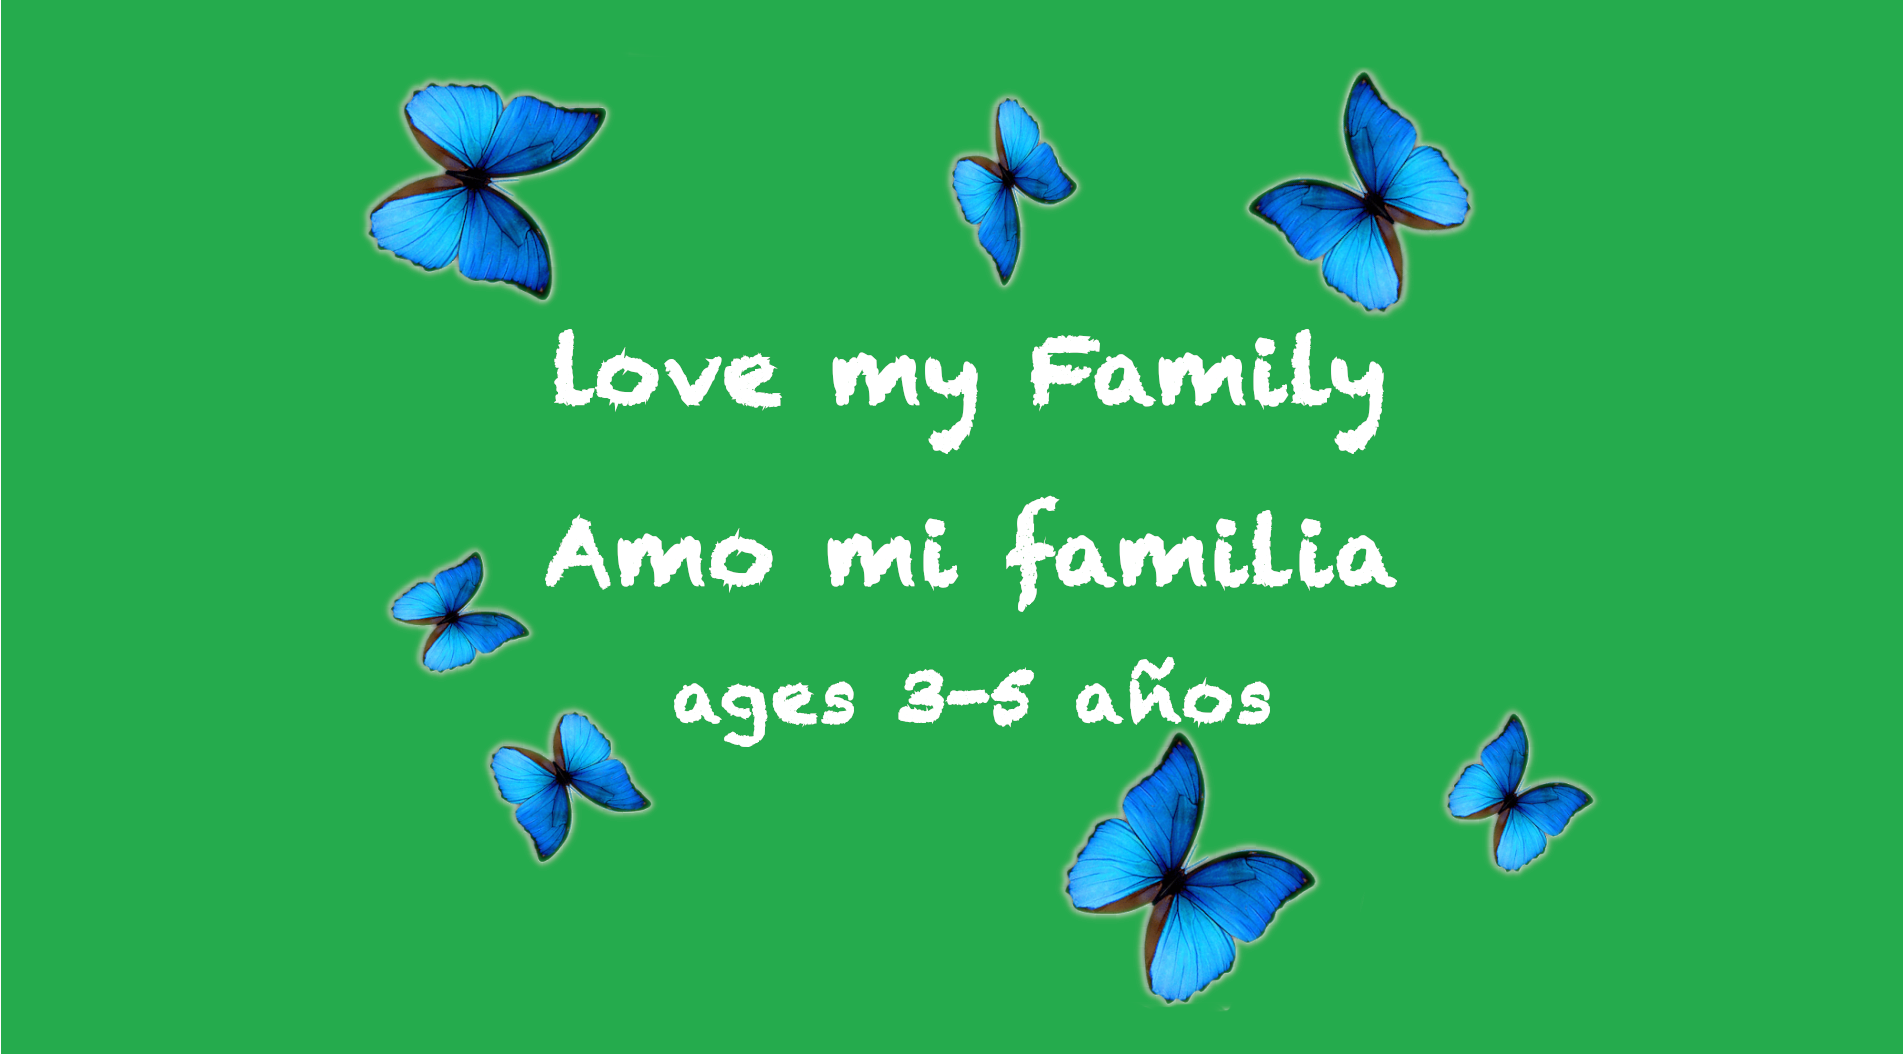 Love My Family para niños de 3 a 5 años